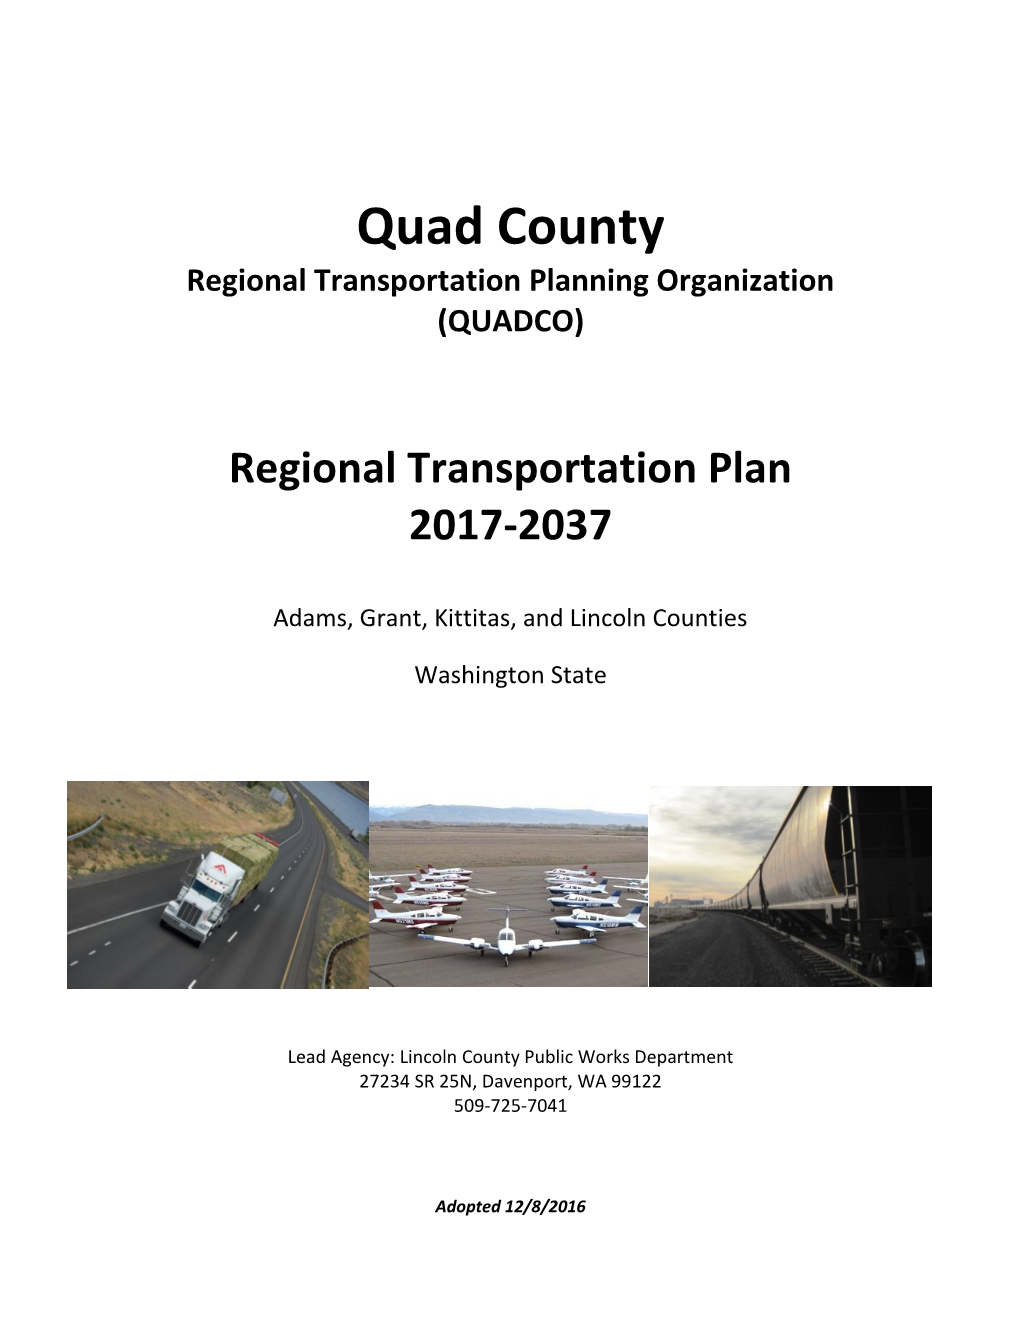 Regional Transportation Plan 2017-2037